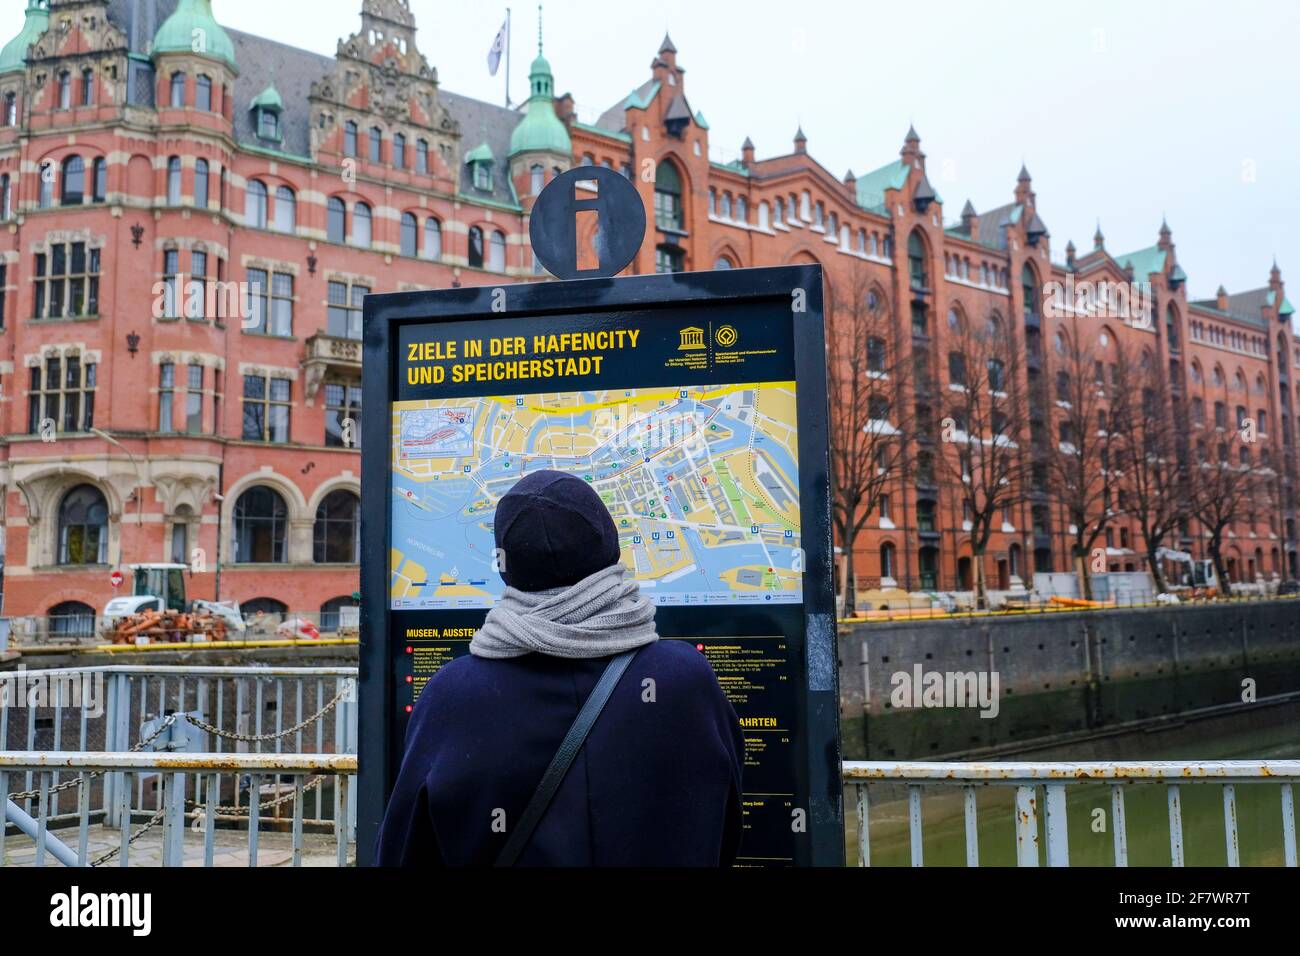 24.11.2018, Hamburg, Deutschland - eine Touristin informiert sich ueber  Ziele in der Hamburger Hafencity und Speicherstadt im November Stock Photo  - Alamy